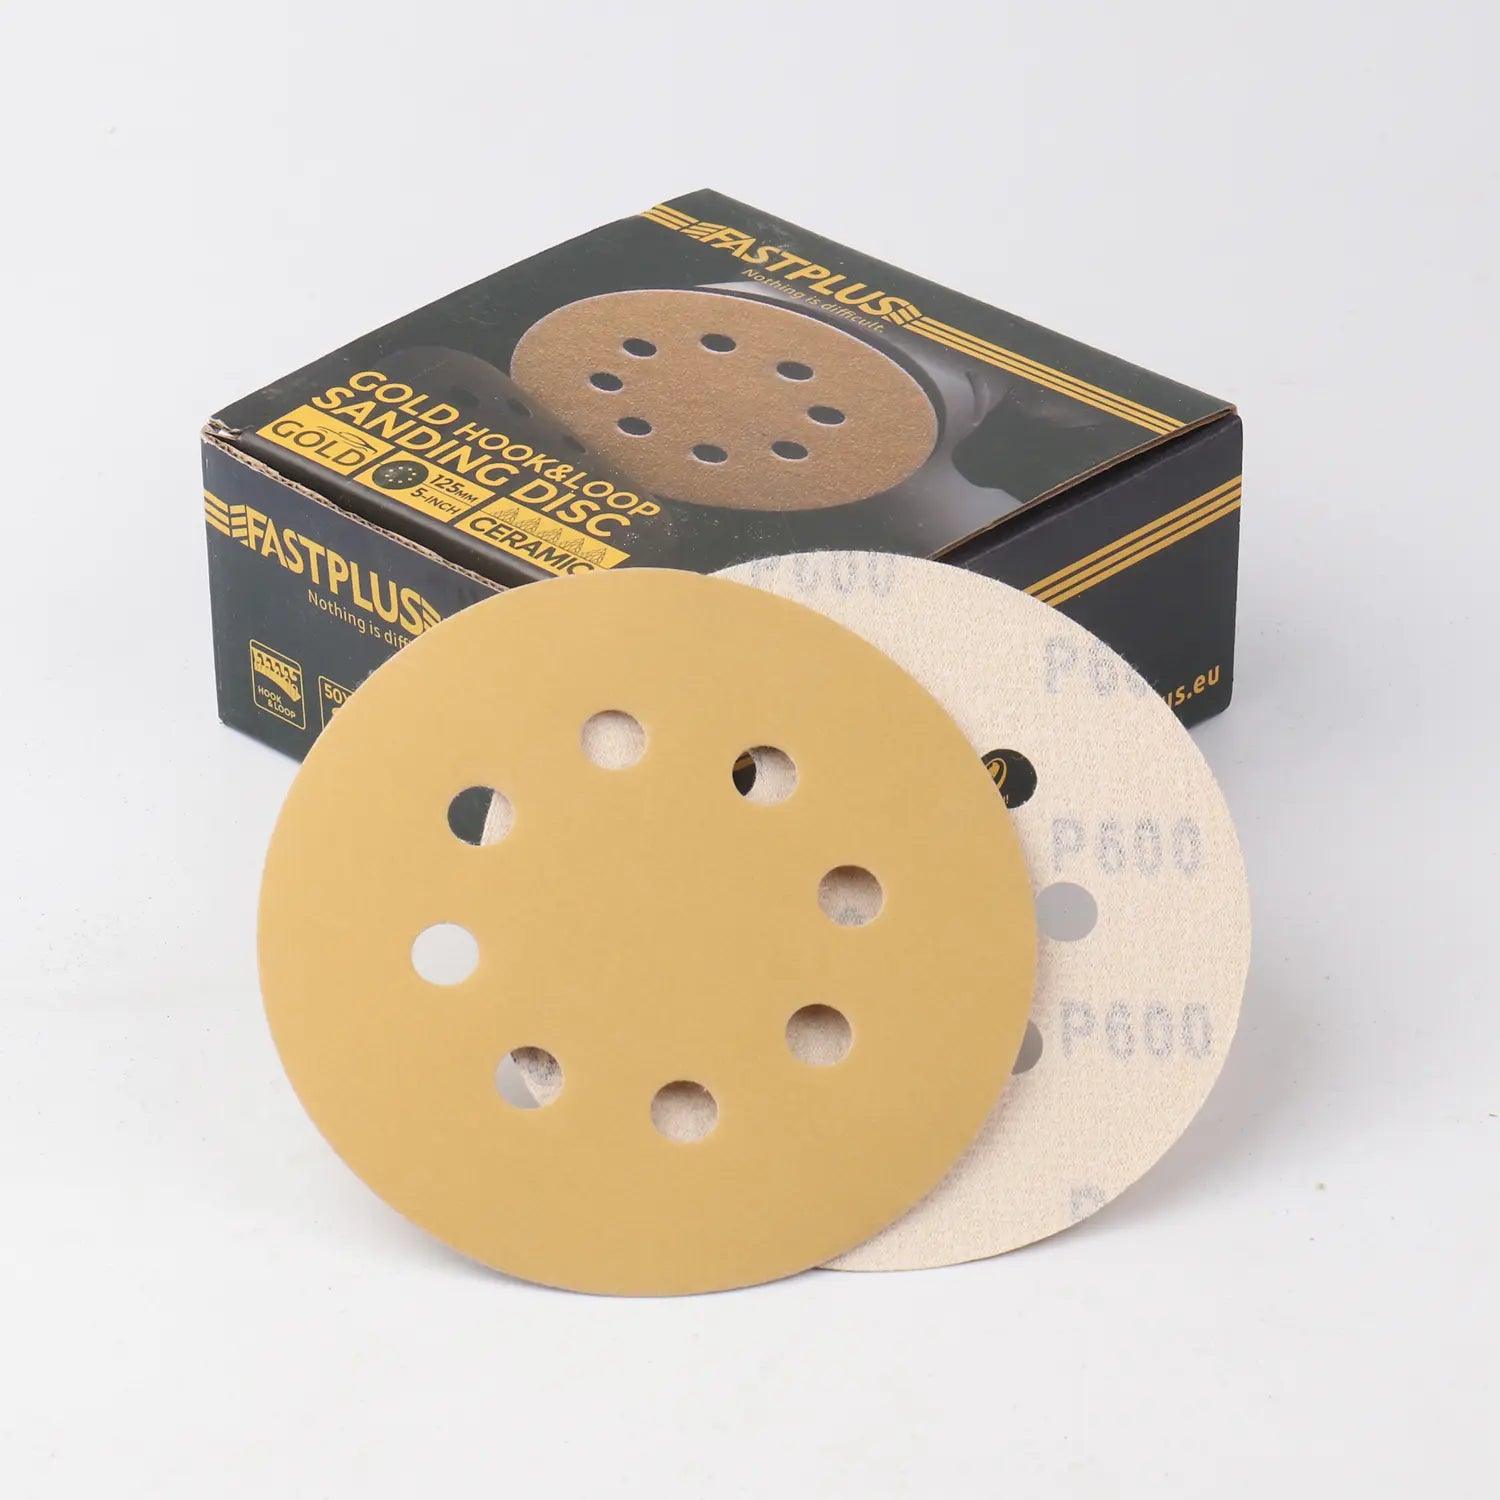 125mm Klett-schleifscheiben gold mirka f15 sanding discs fastplus P600